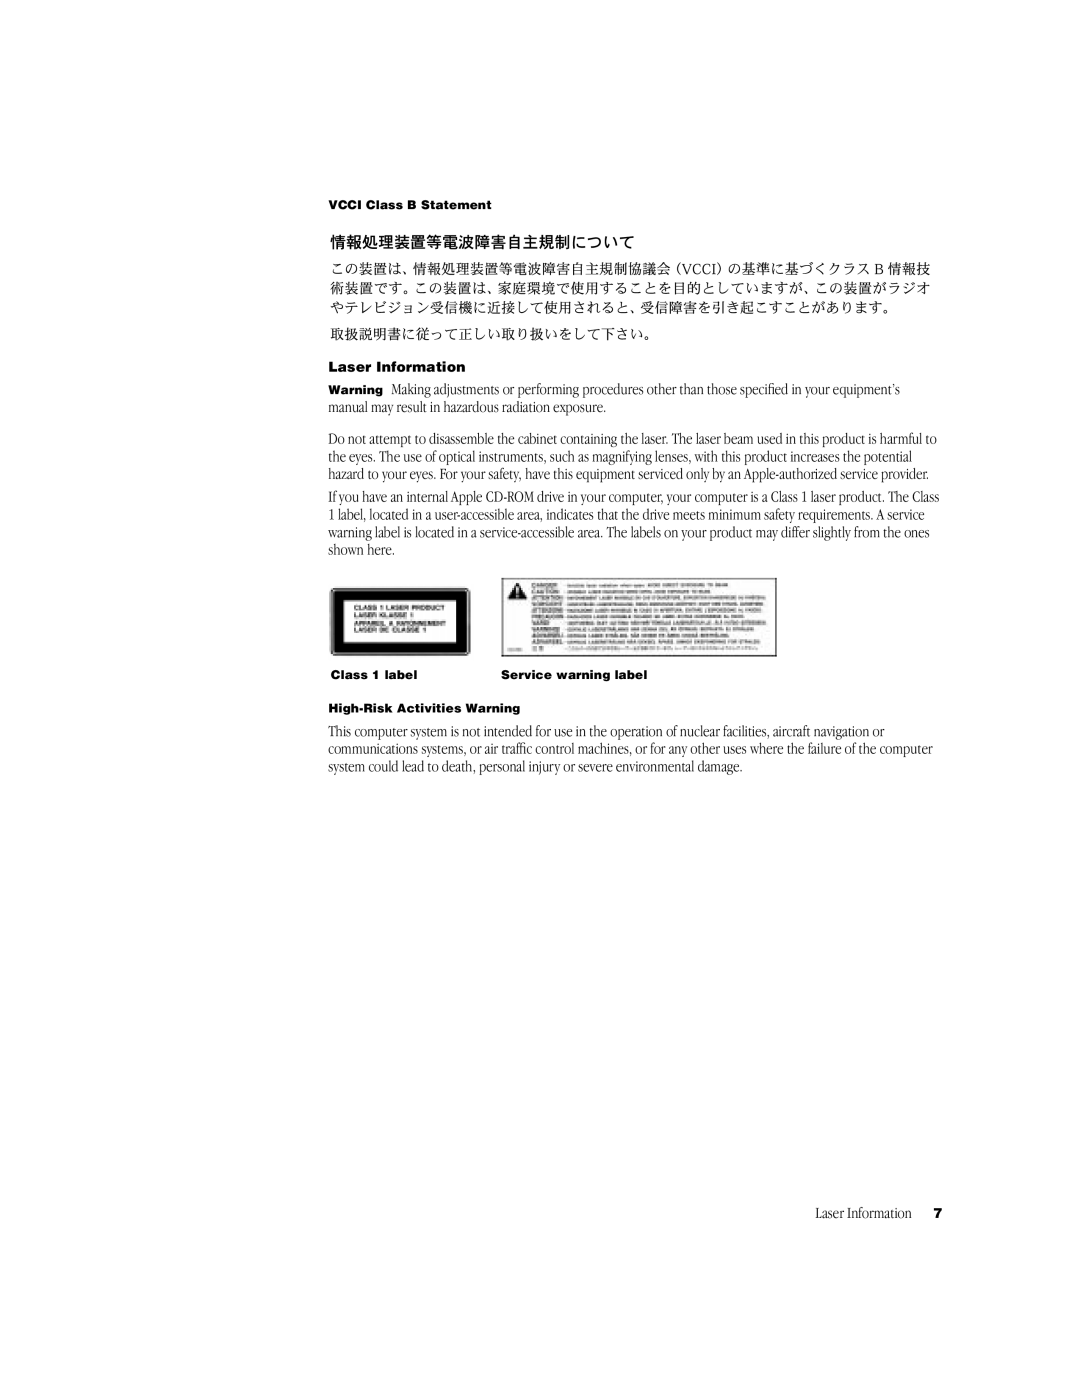 Apple G3 manual Laser Information 